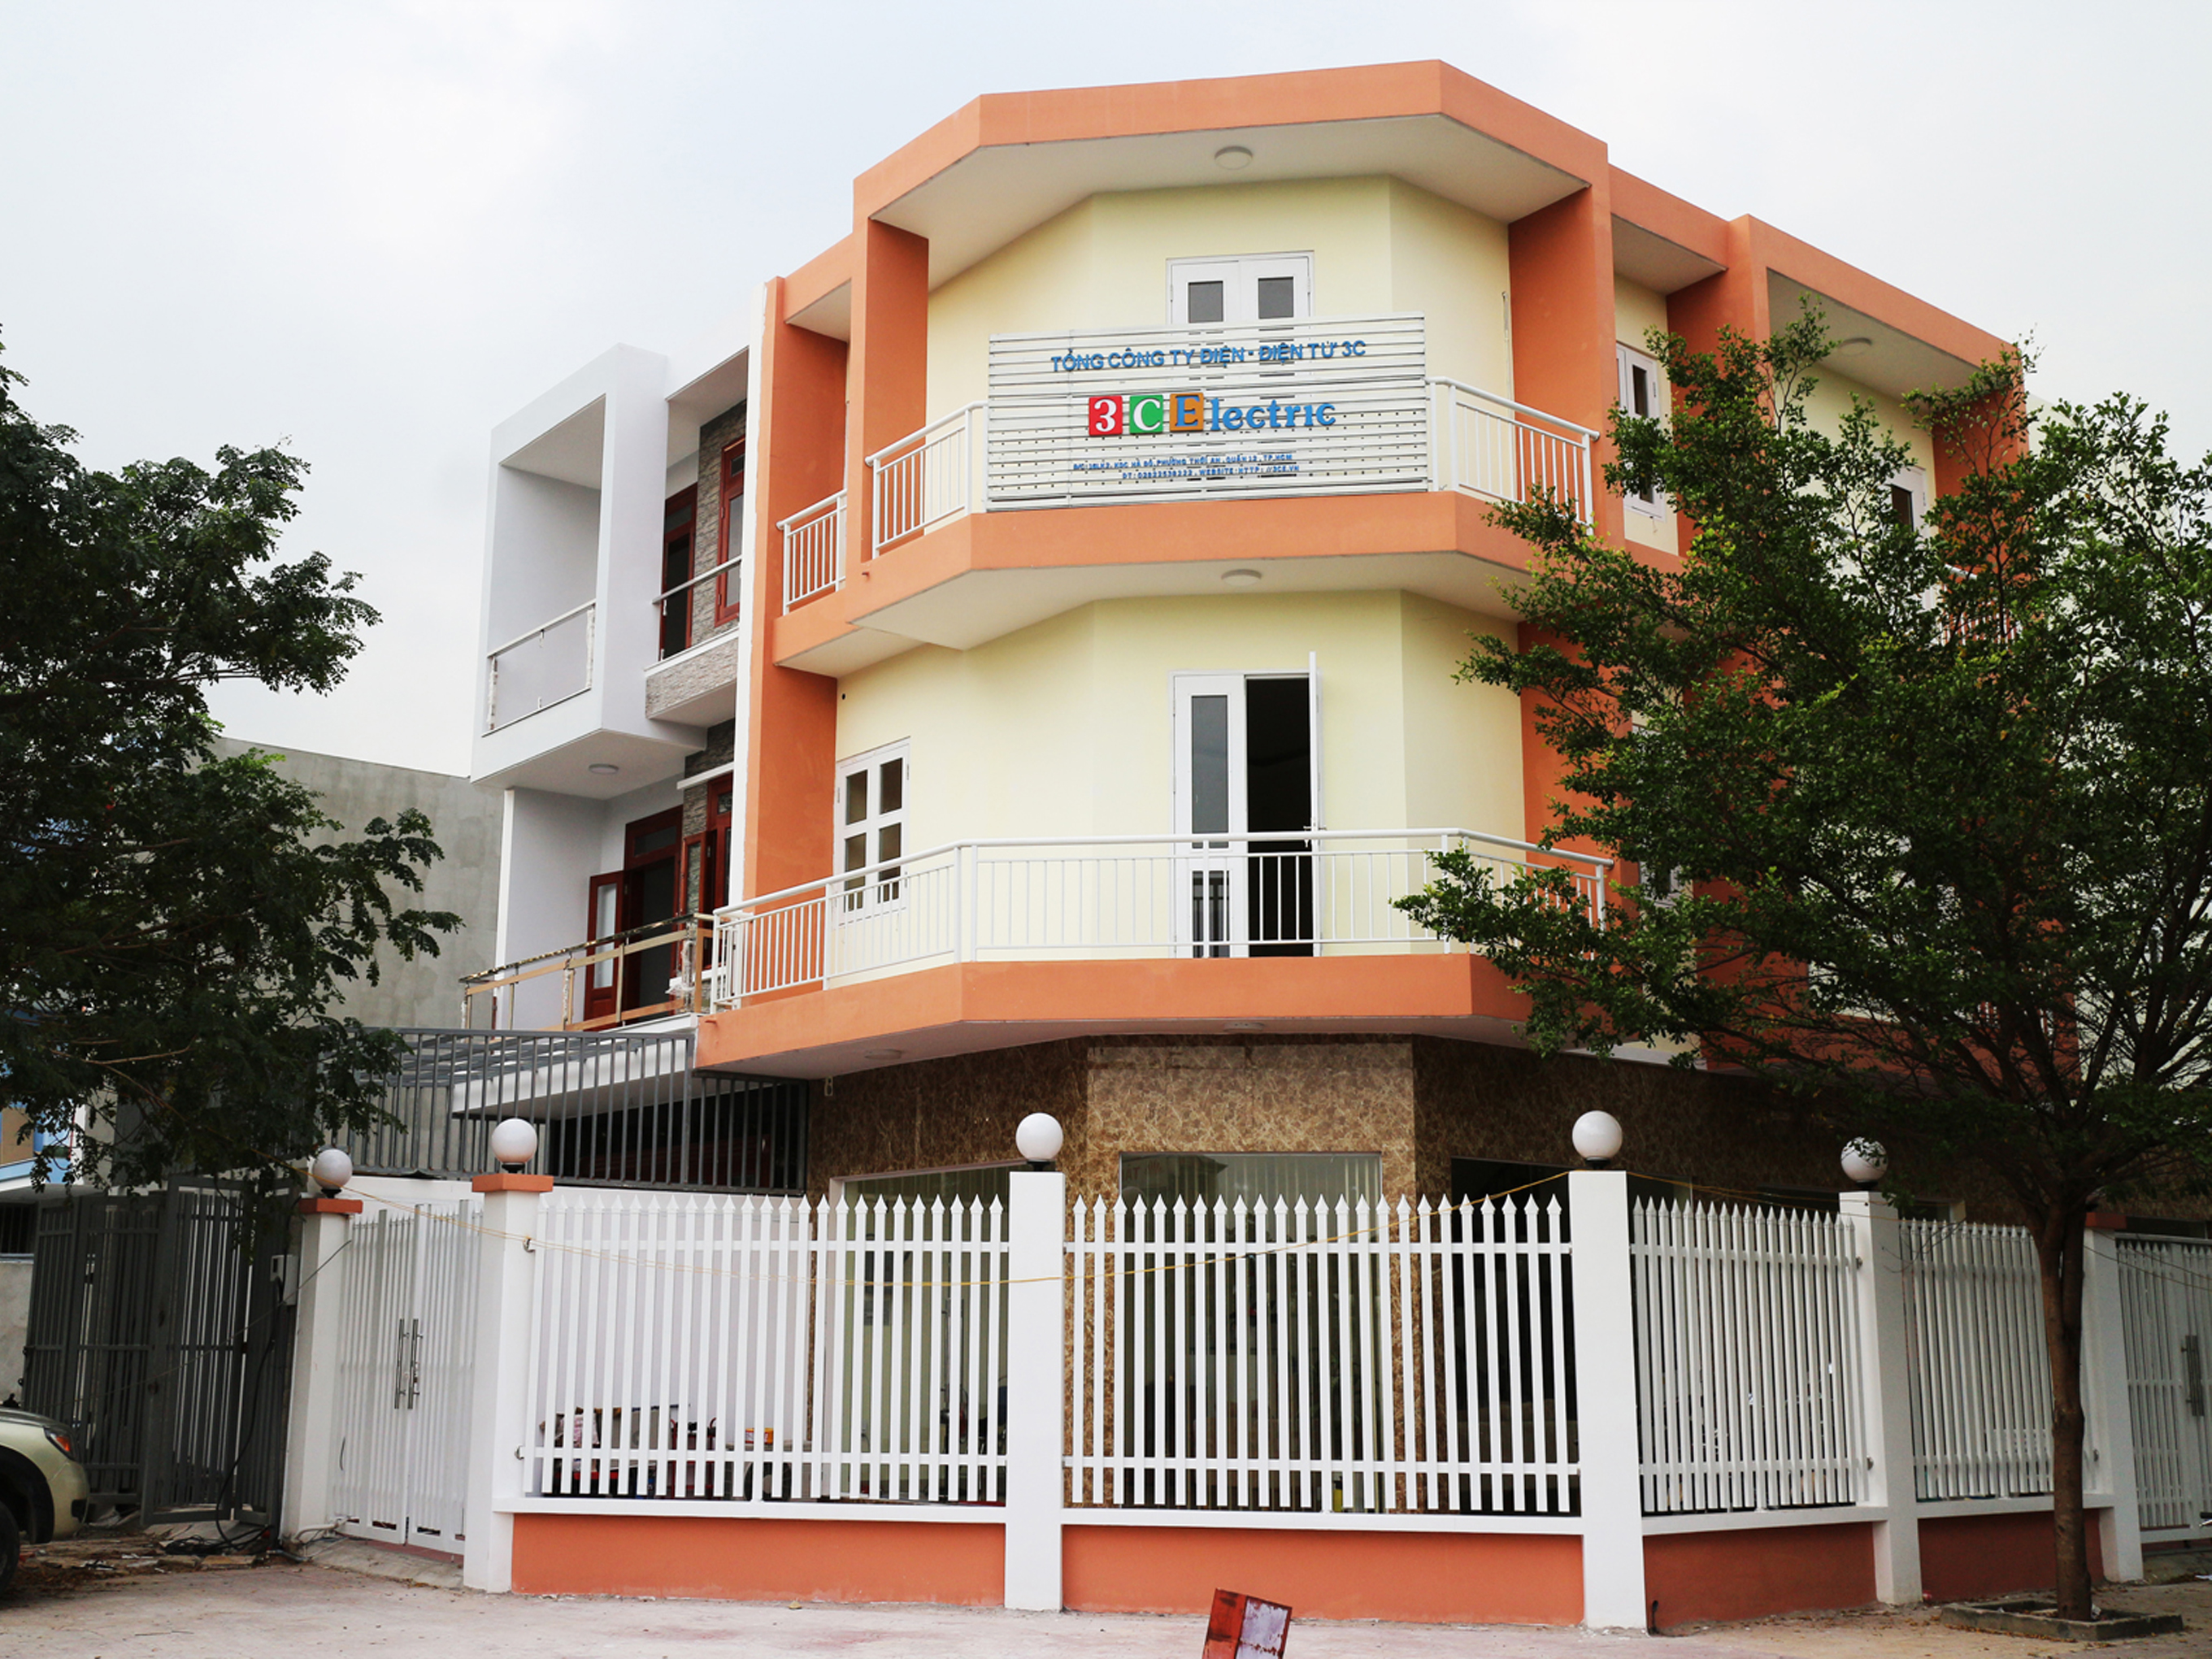 3CElectric khánh thành văn phòng mới tại Tp. Hồ Chí Minh